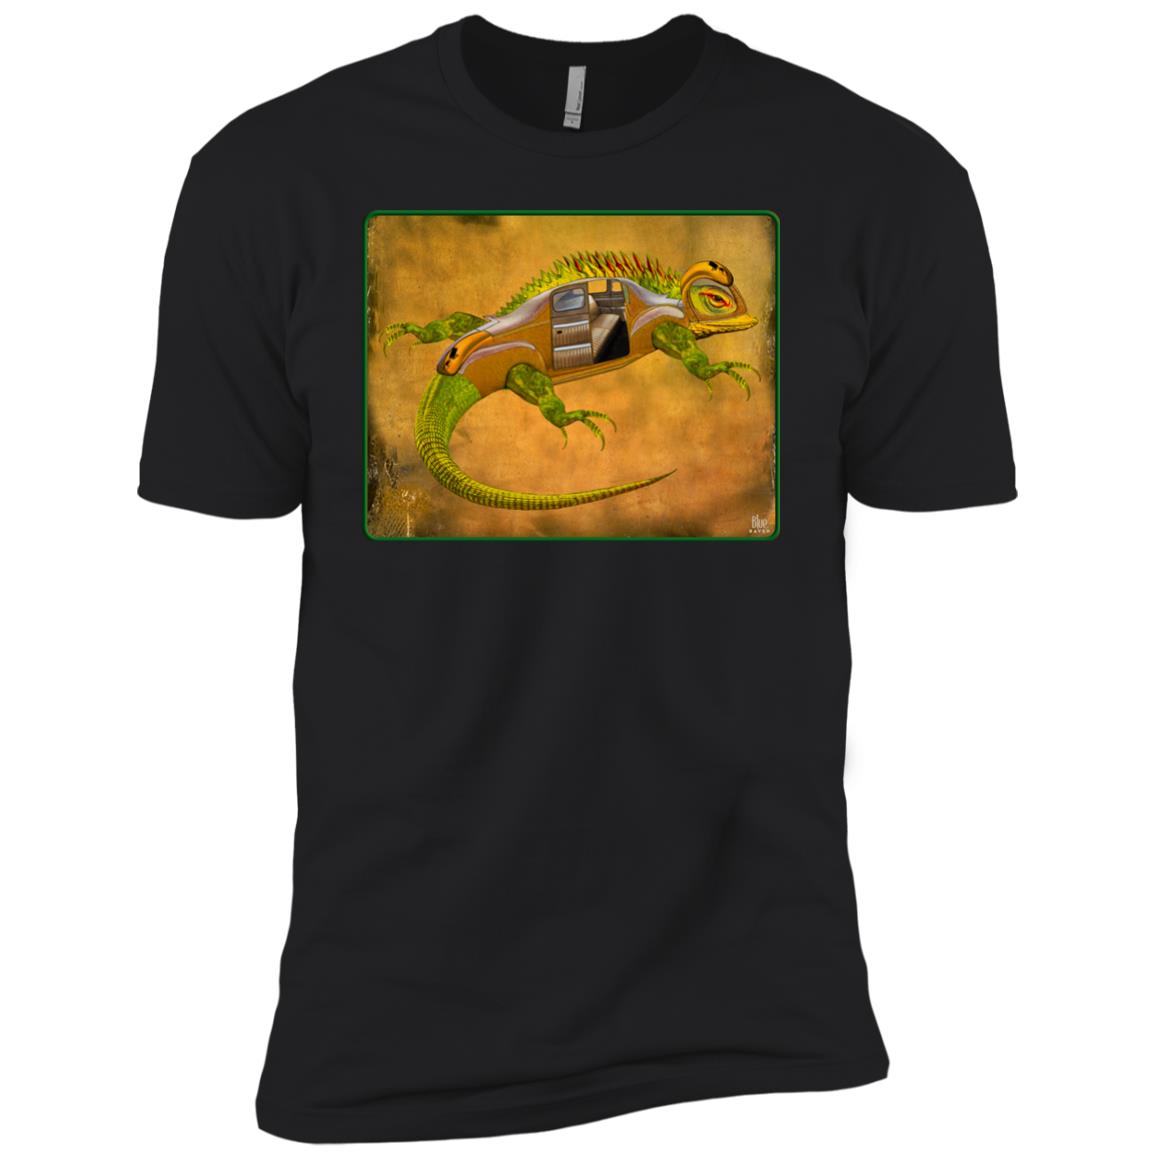 Uber Lizard - green - Boy's Premium T-Shirt